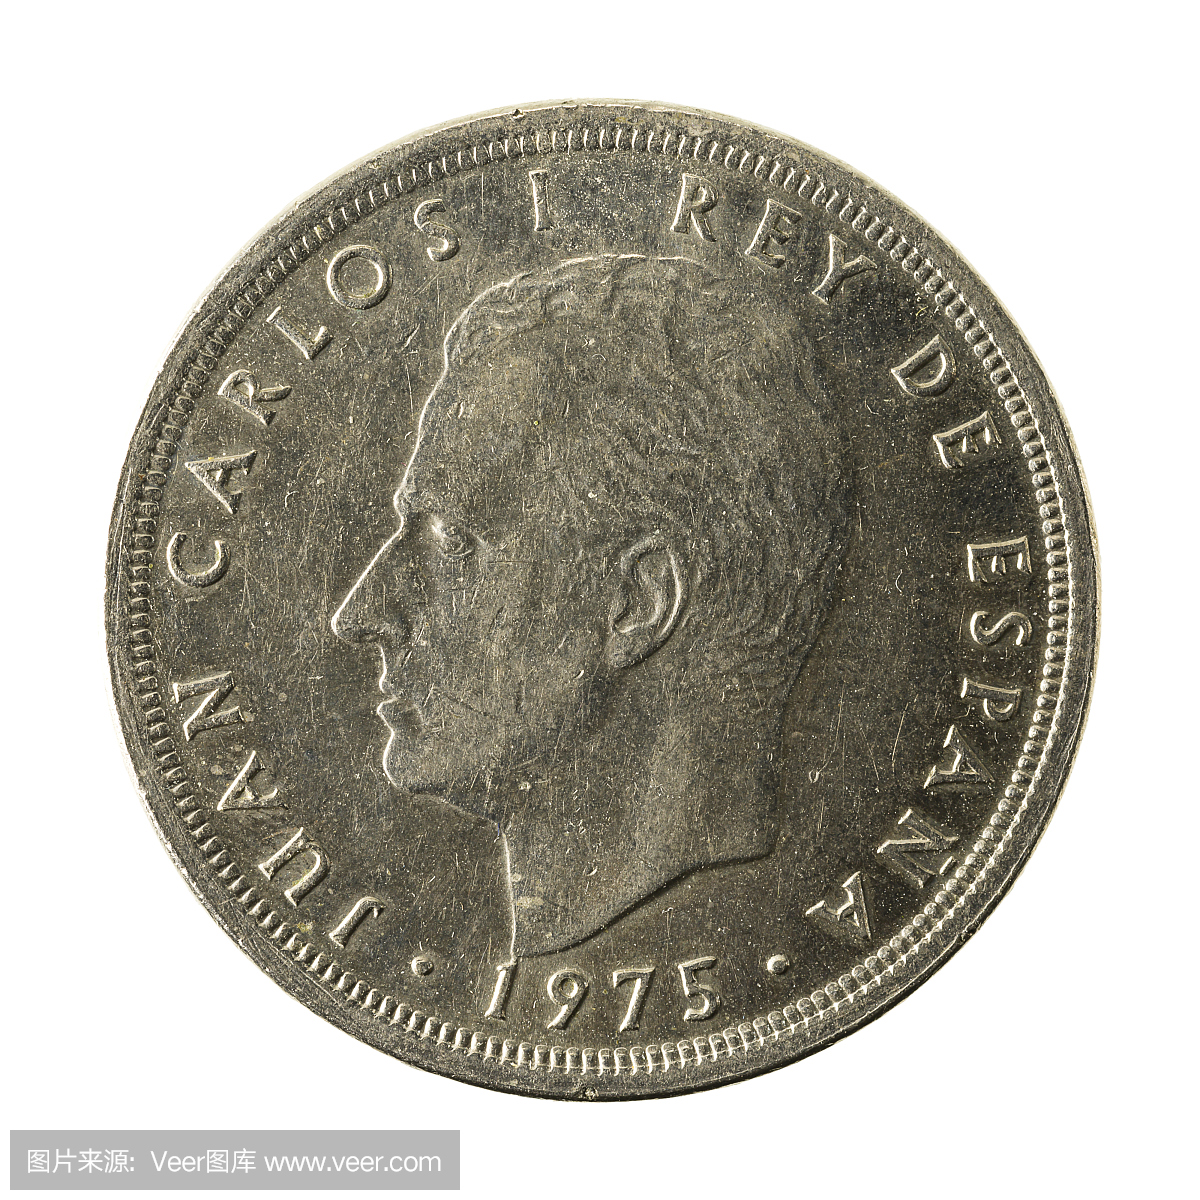 50西班牙比塞塔硬币(1975)反向隔绝在白色背景